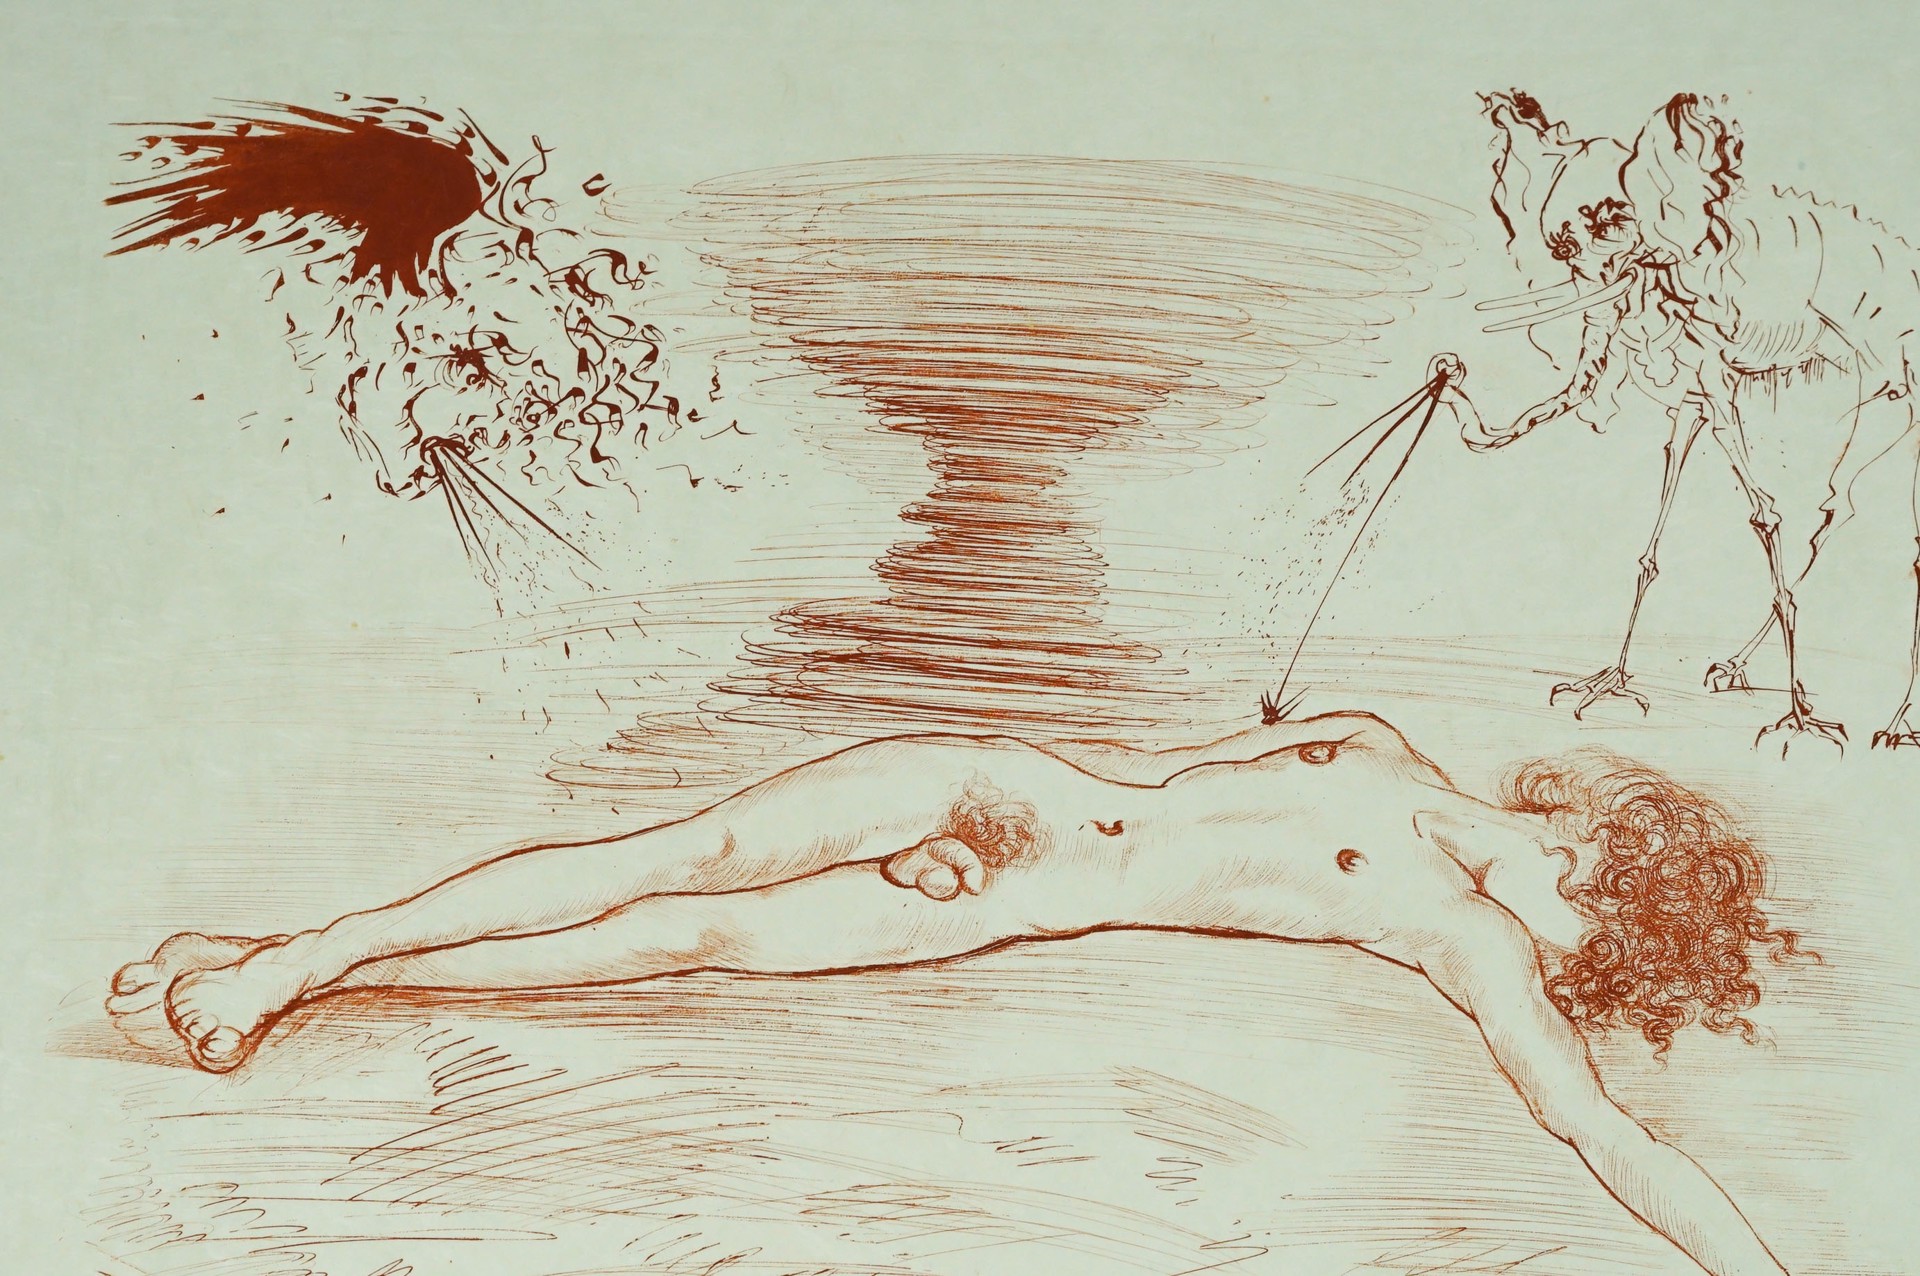 Mythology Hypnos by Salvador Dalí